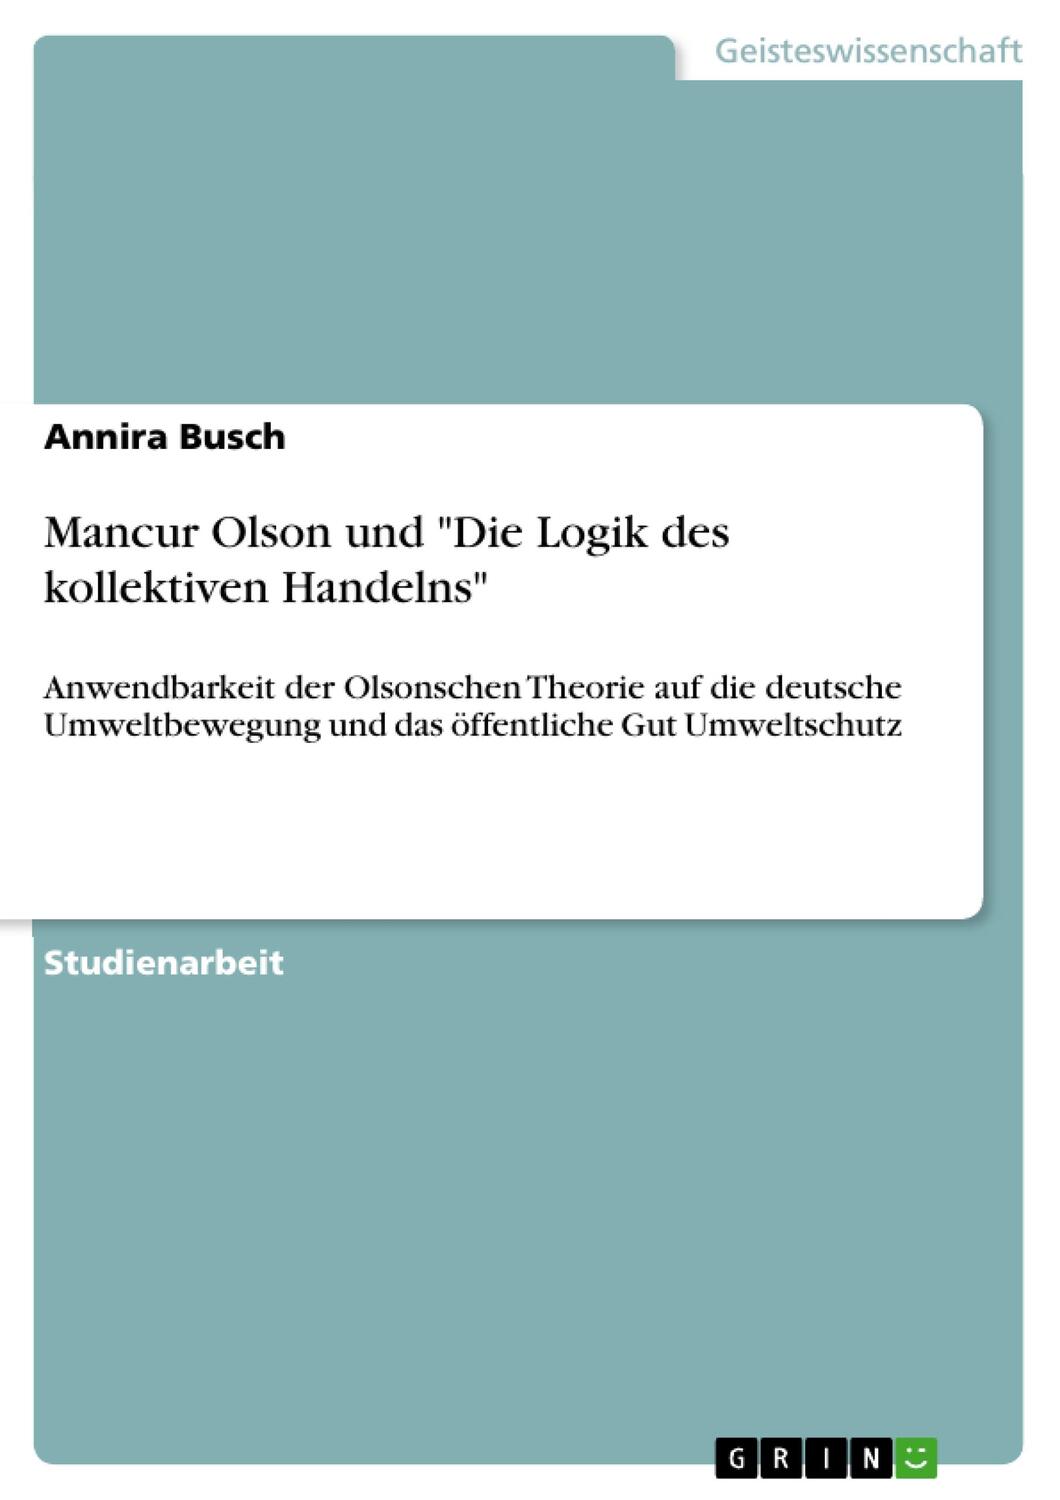 Cover: 9783640246519 | Mancur Olson und "Die Logik des kollektiven Handelns" | Annira Busch